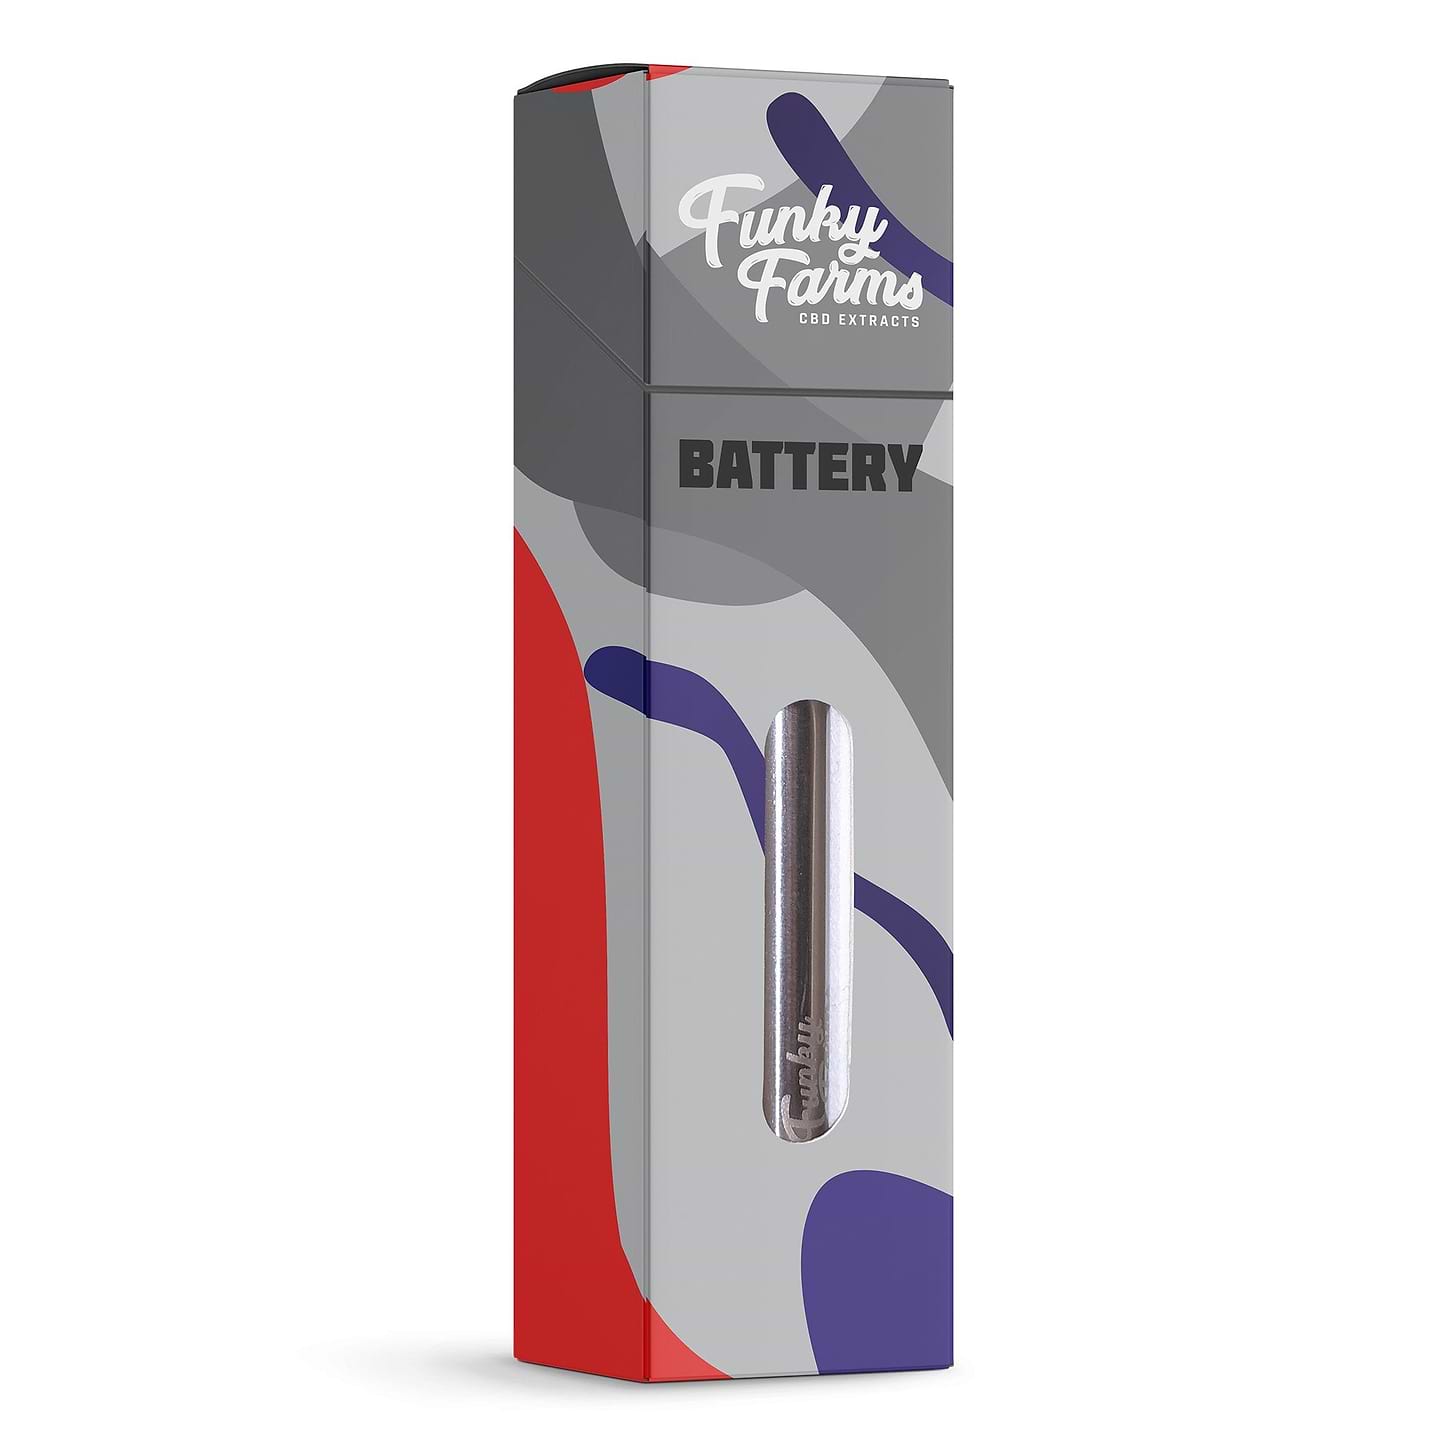 Funky Farms Cartridge Battery